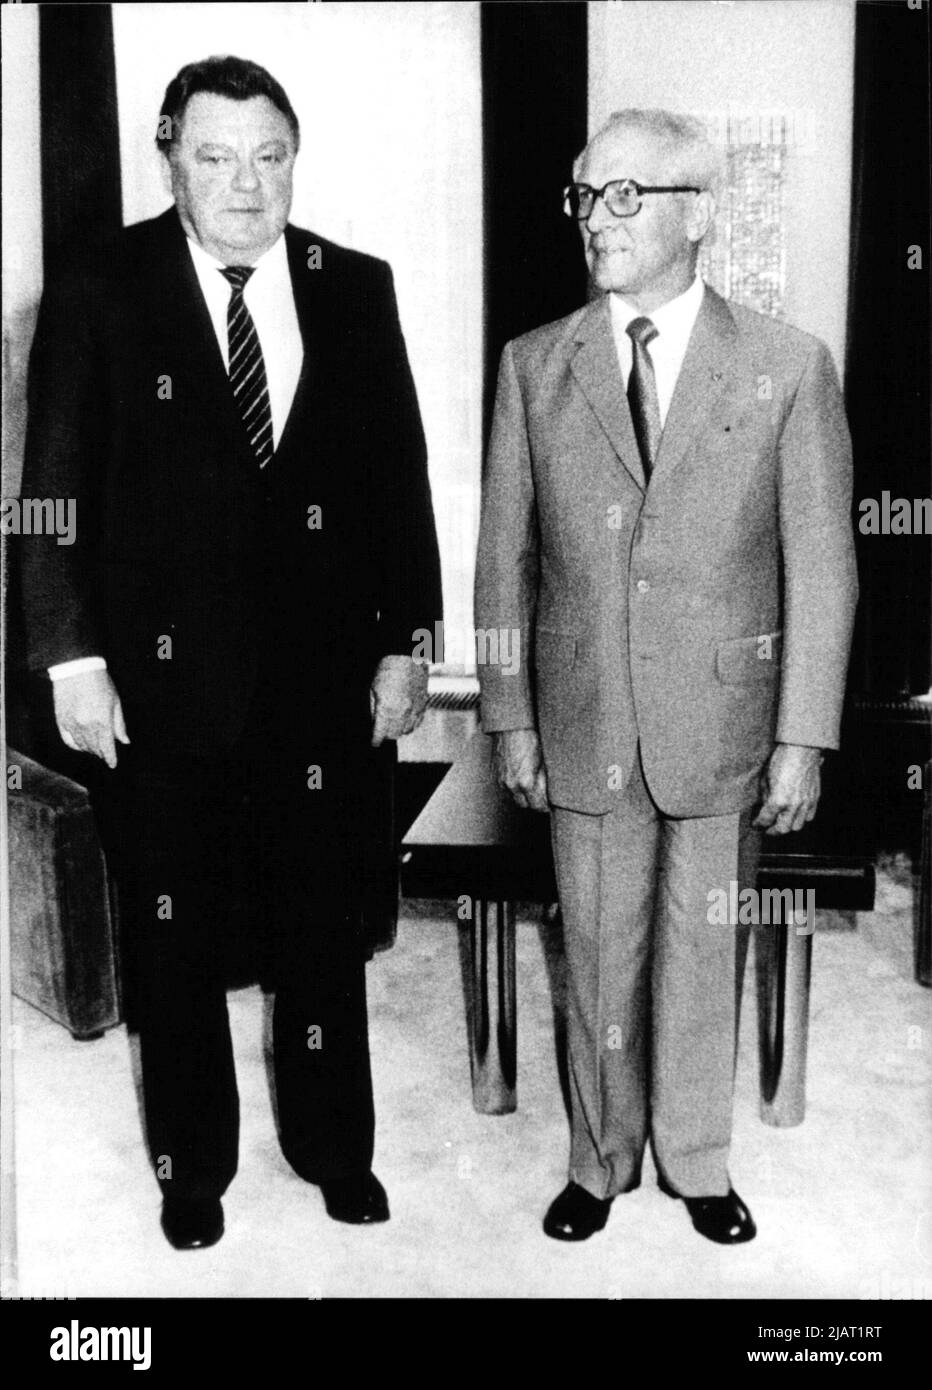 DDR-Staatsratsvorsitzender und Generalsekretär des ZK der SED Erich Honecker mit dem Ministerpräsidenten von Bayern Franz-Josef Strauß beim Treffen am Werbelinsee, Juli 1983. Foto Stock